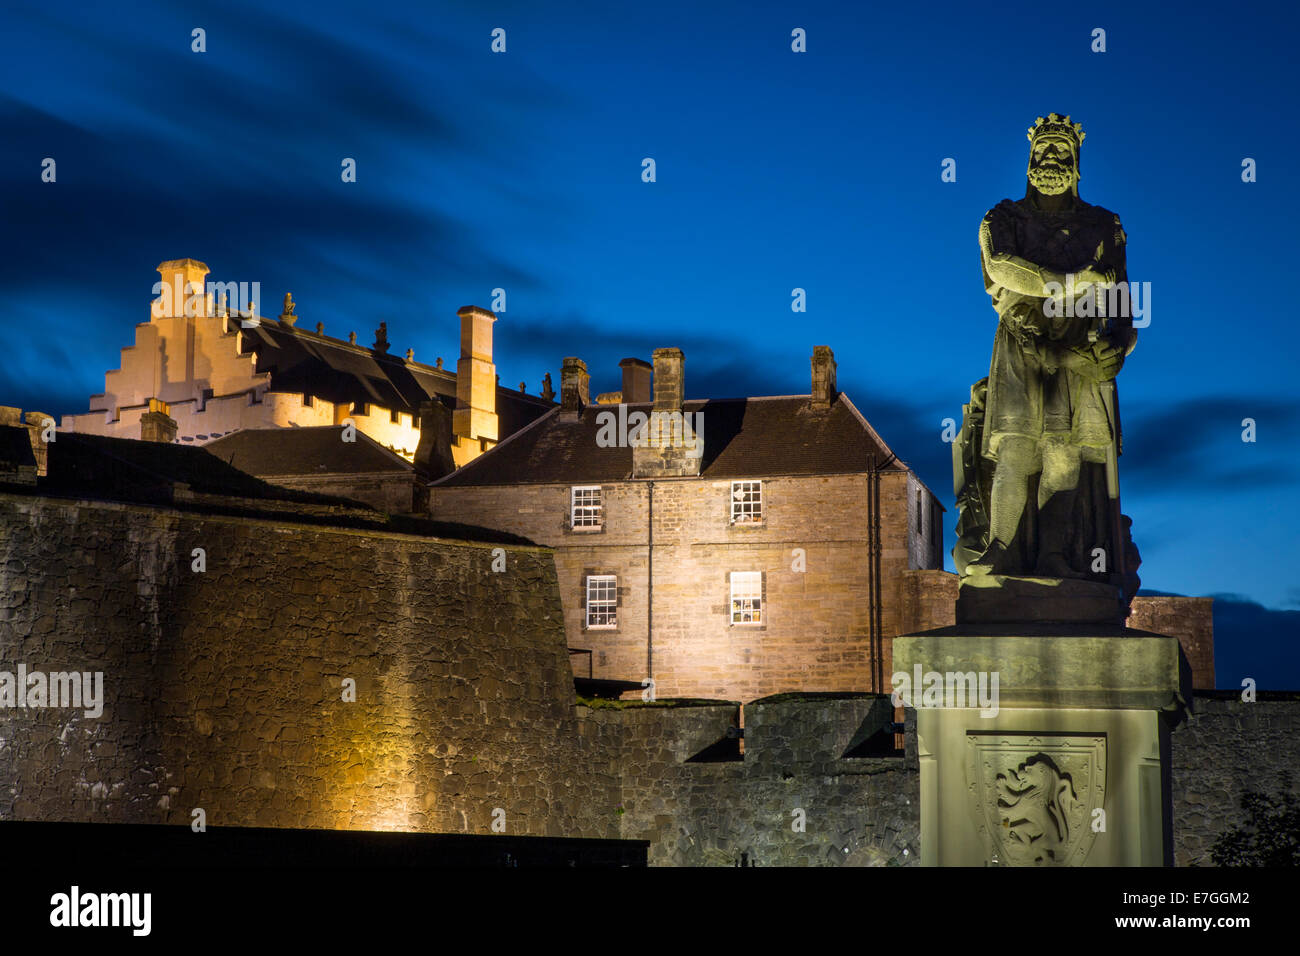 Crépuscule au-dessous de la statue de Robert Bruce et le château de Stirling, Stirling, Ecosse Banque D'Images